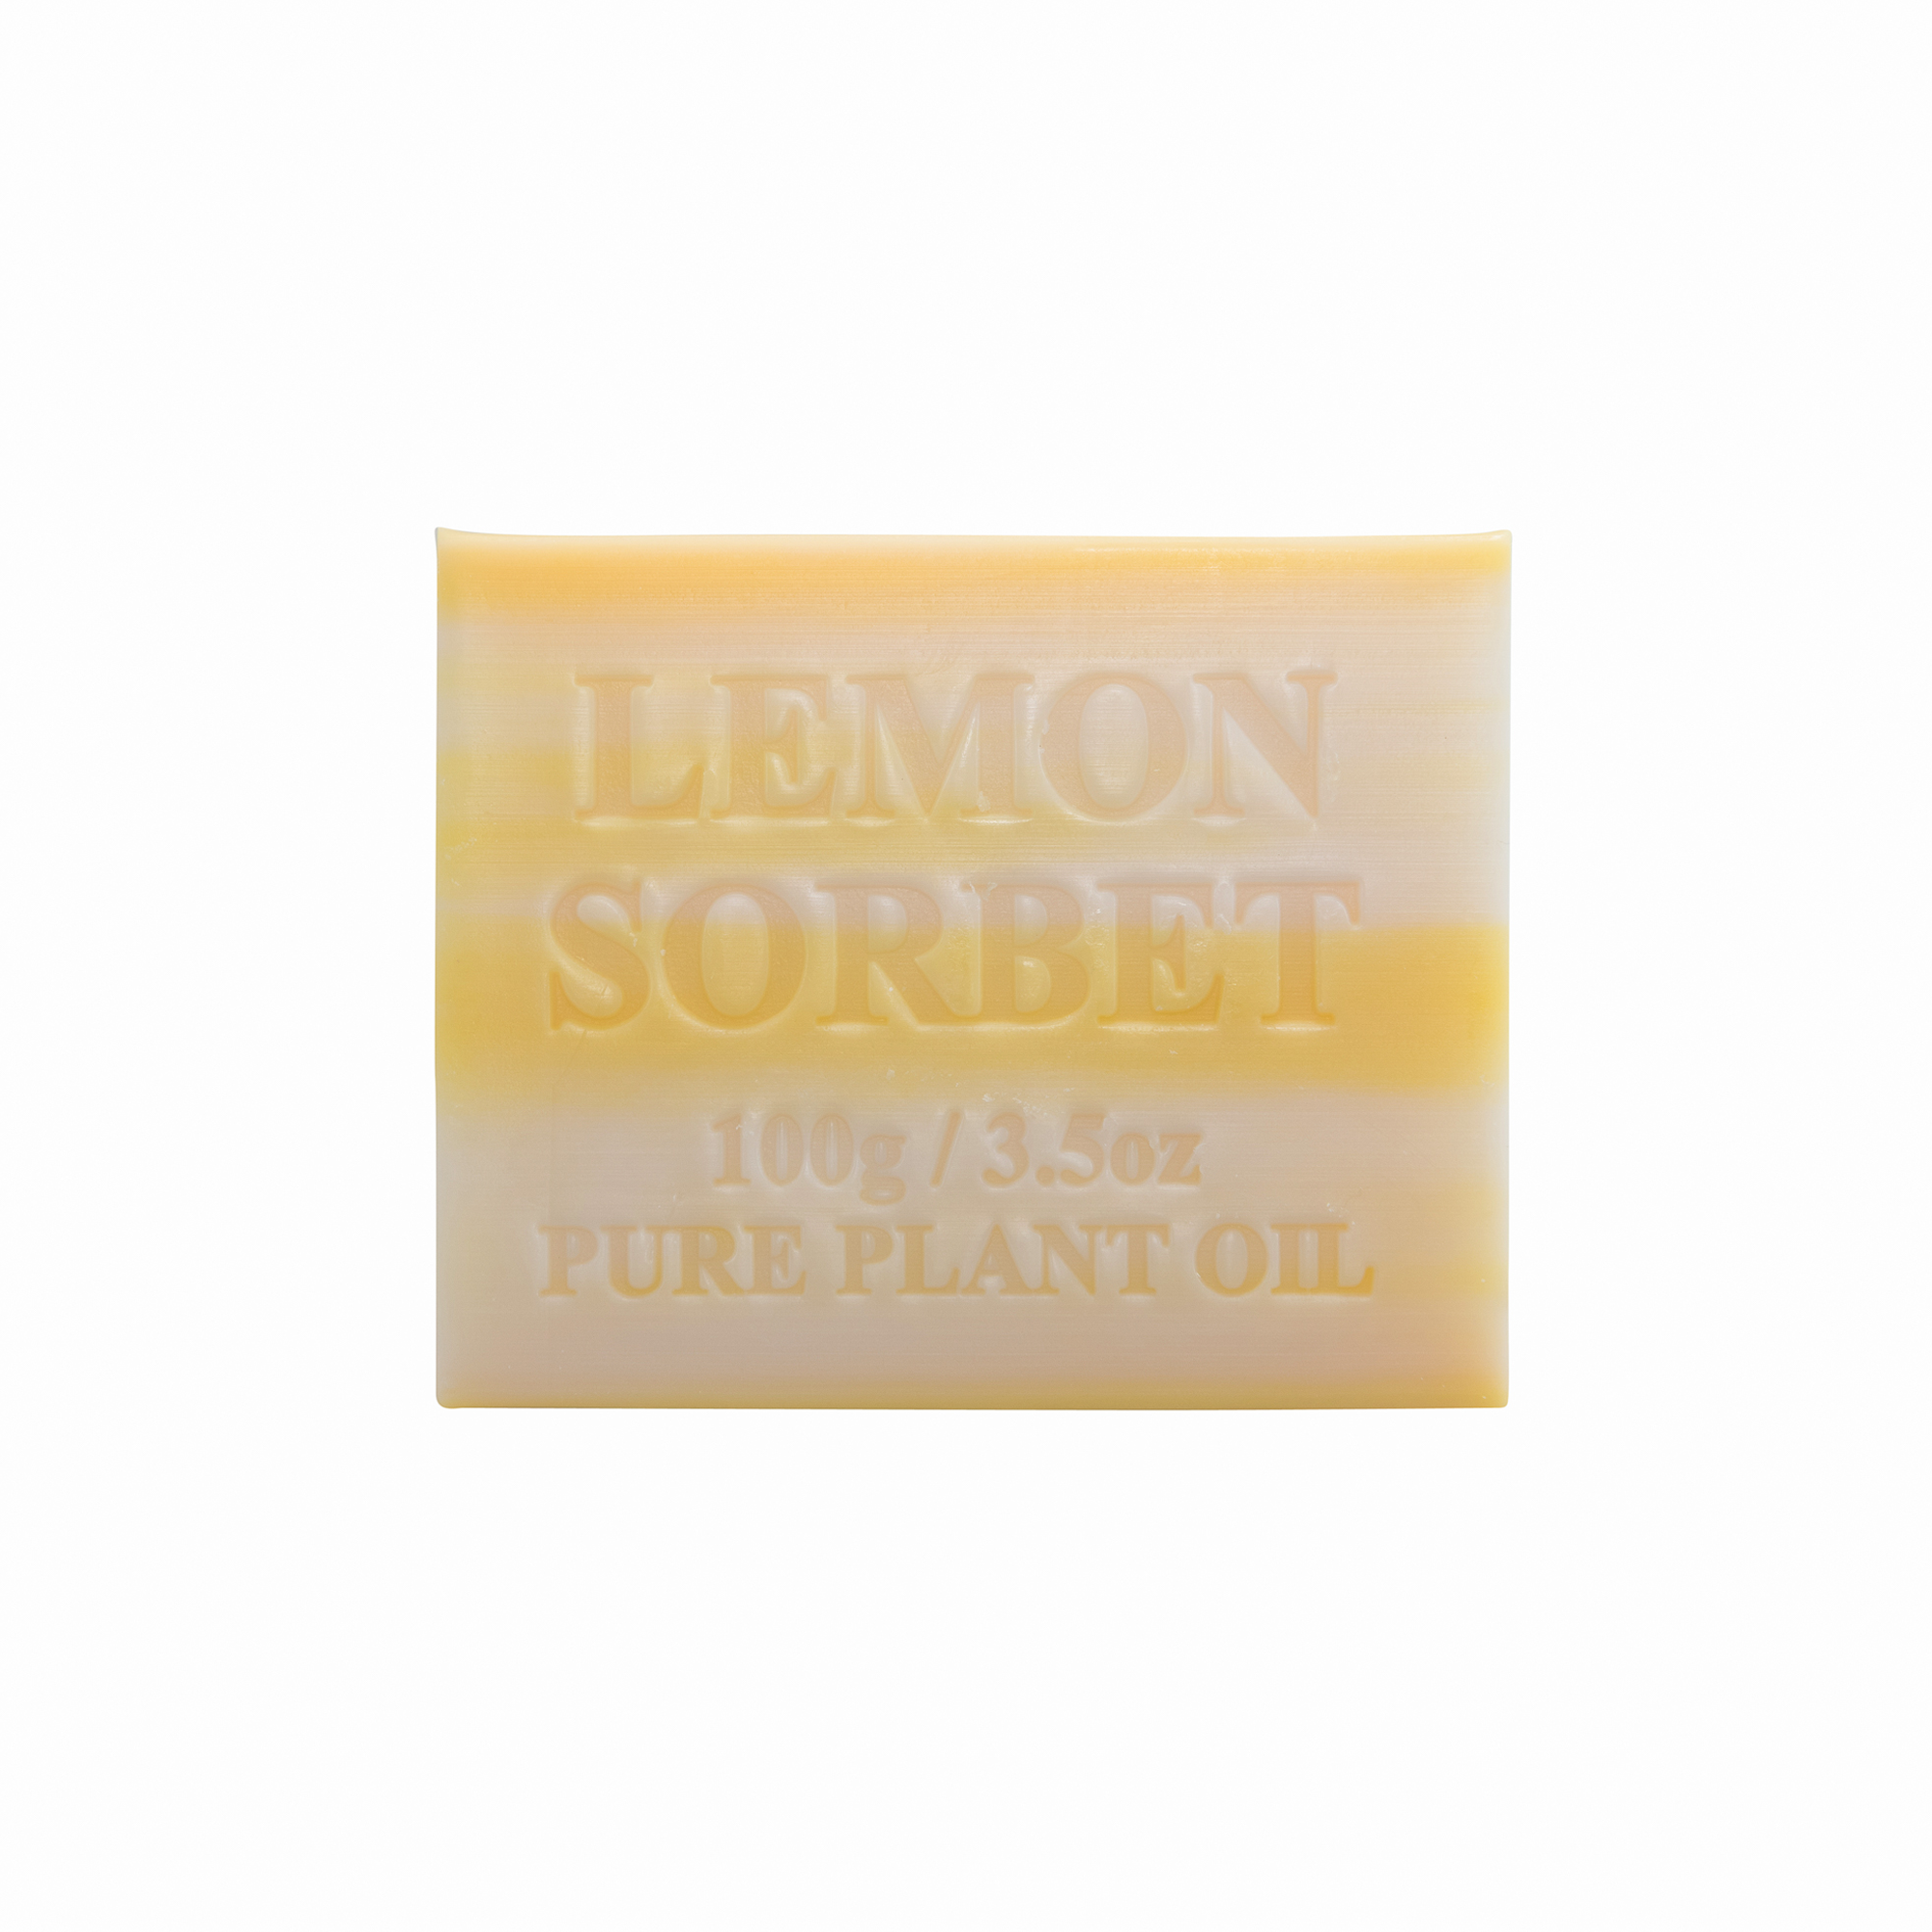 100g Lemon Sorbet Soap x100 Carton